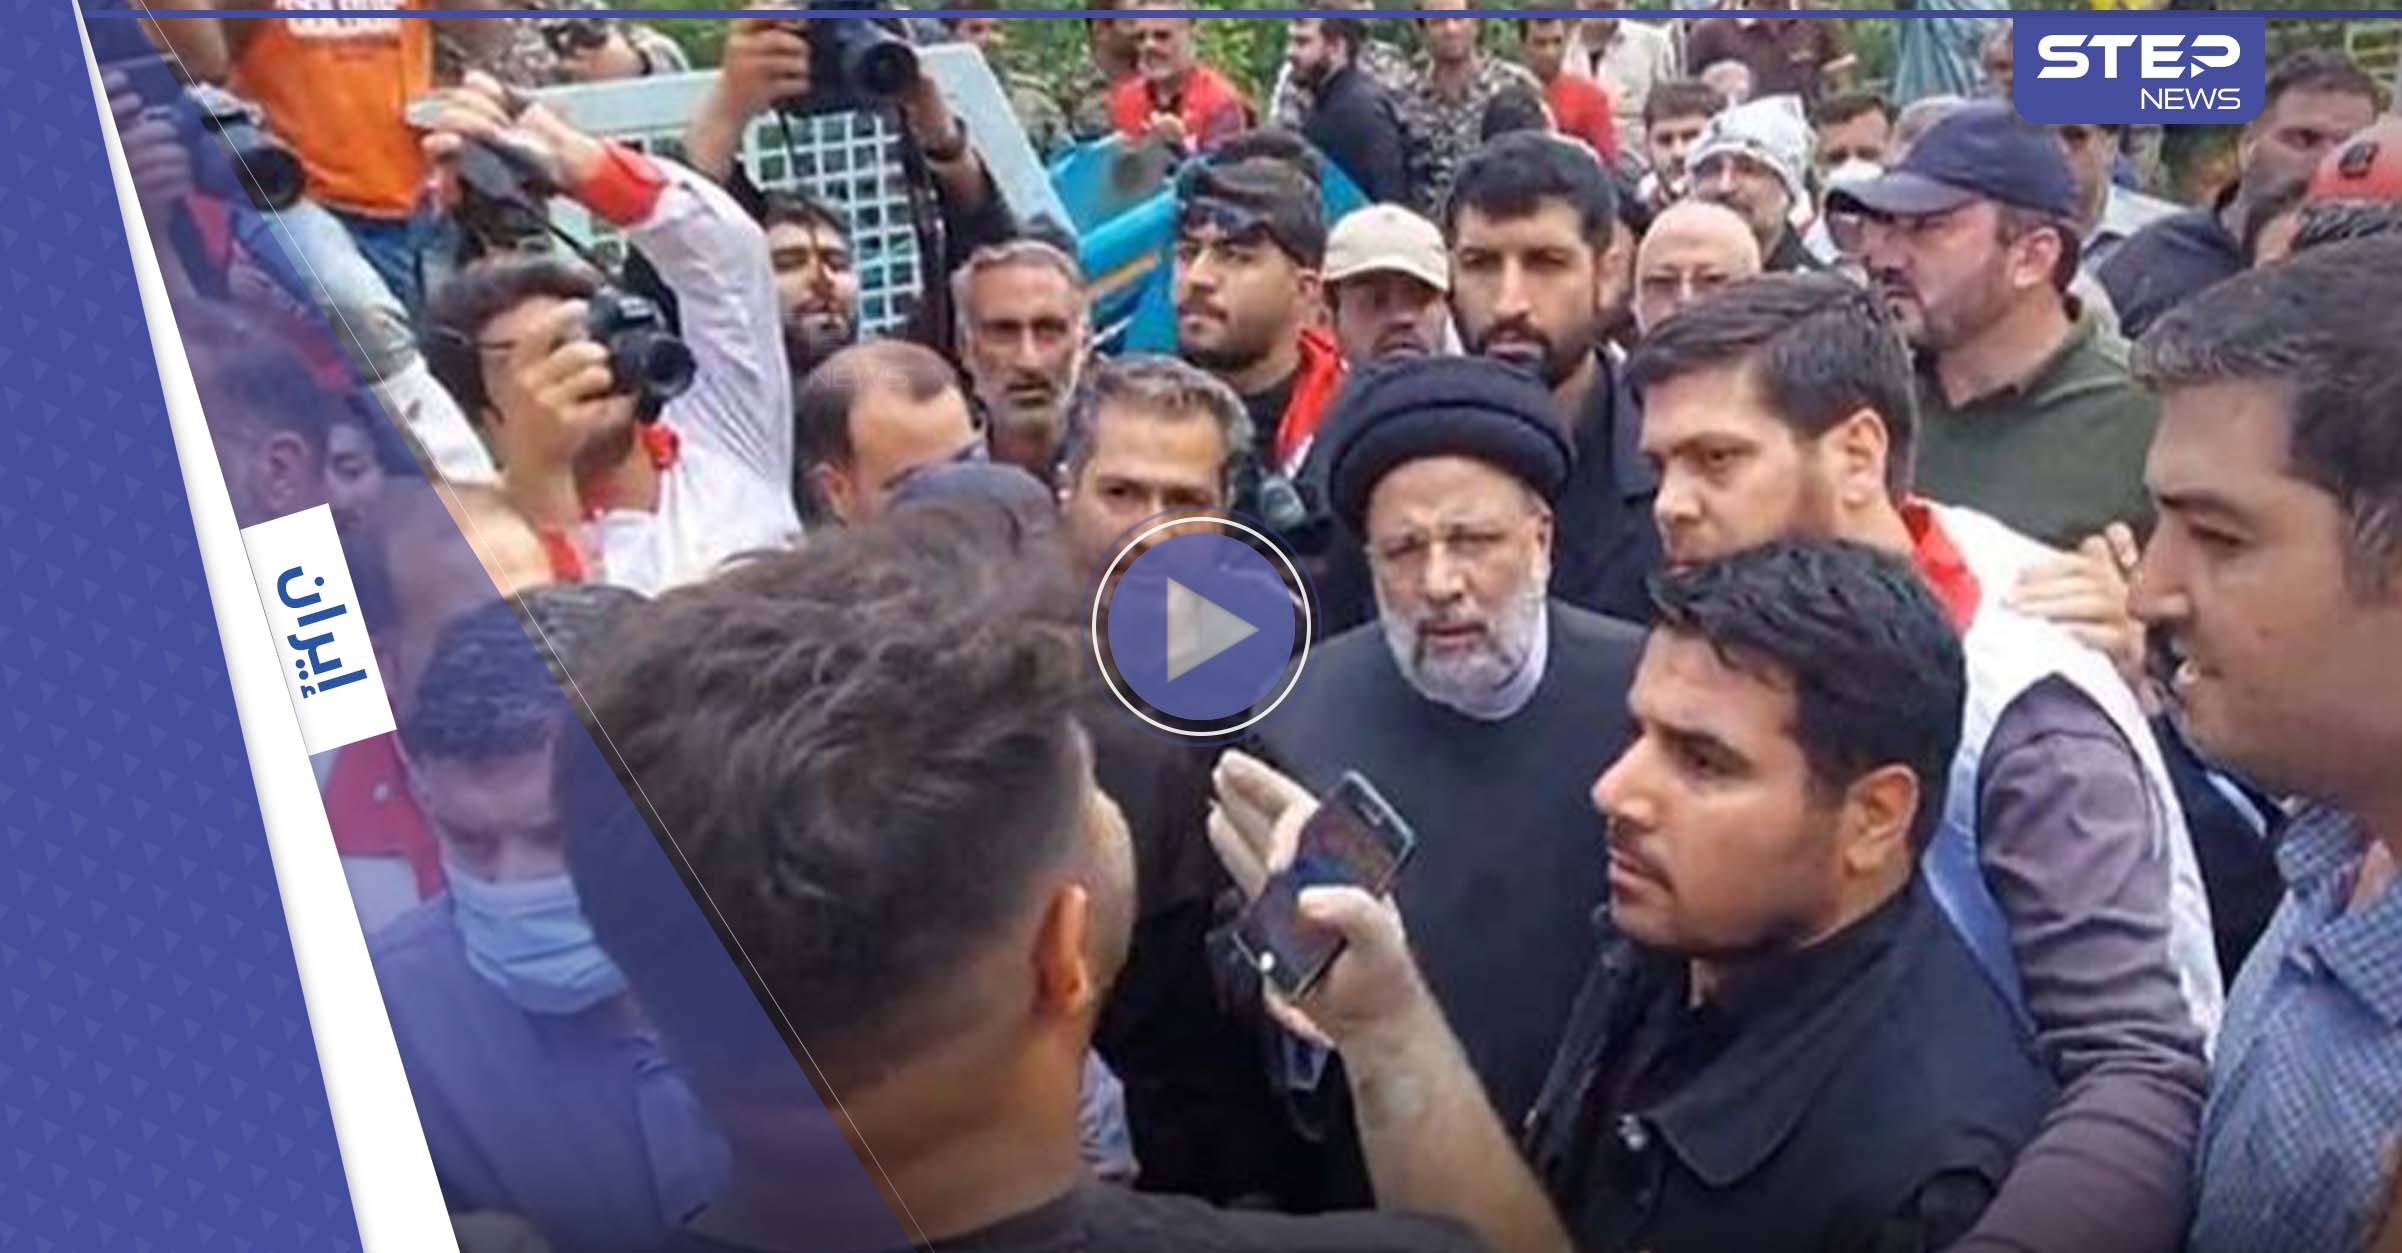 احتجاجات بإيران وشخص يصرخ بوجه الرئيس بما "لا يجب أن يُقال"